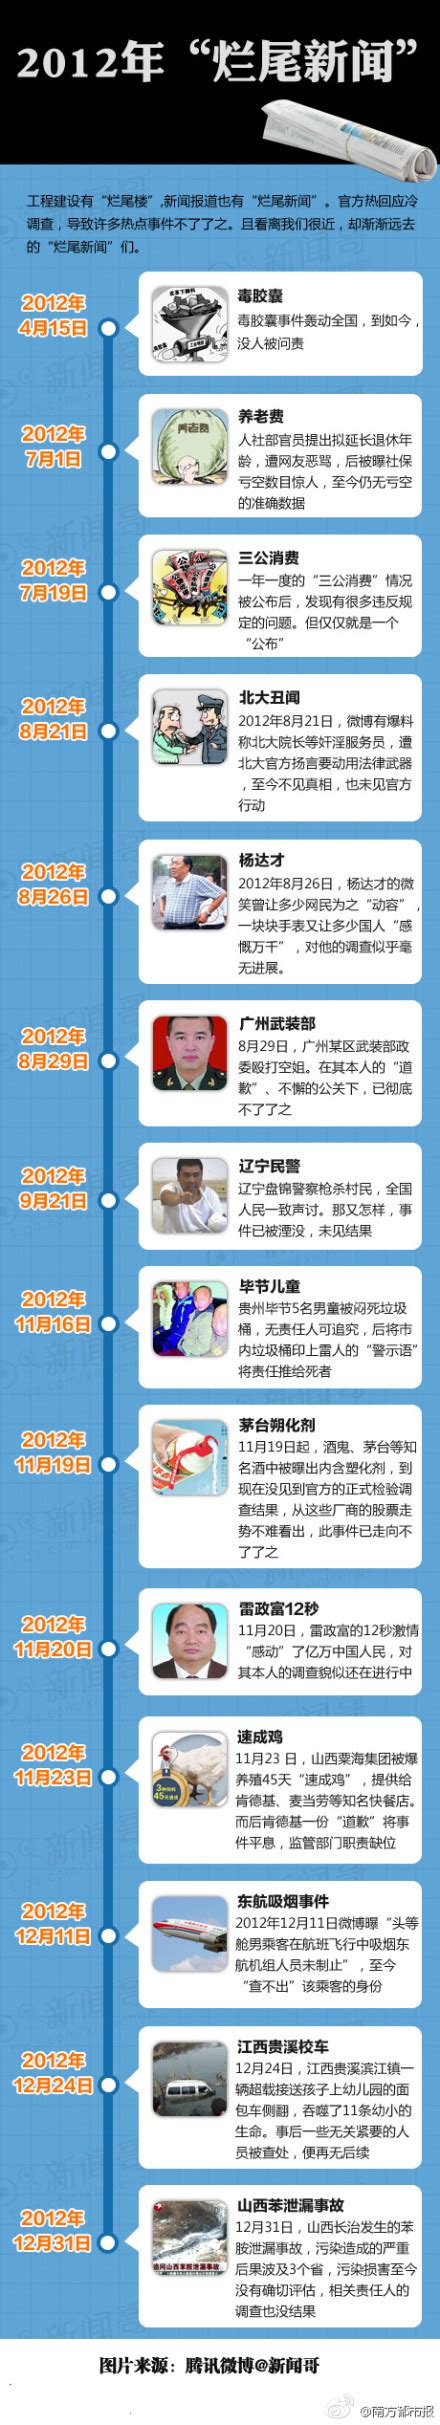 2012年烂尾新闻盘点：“表哥”杨达才案等杳无音讯-闽南网